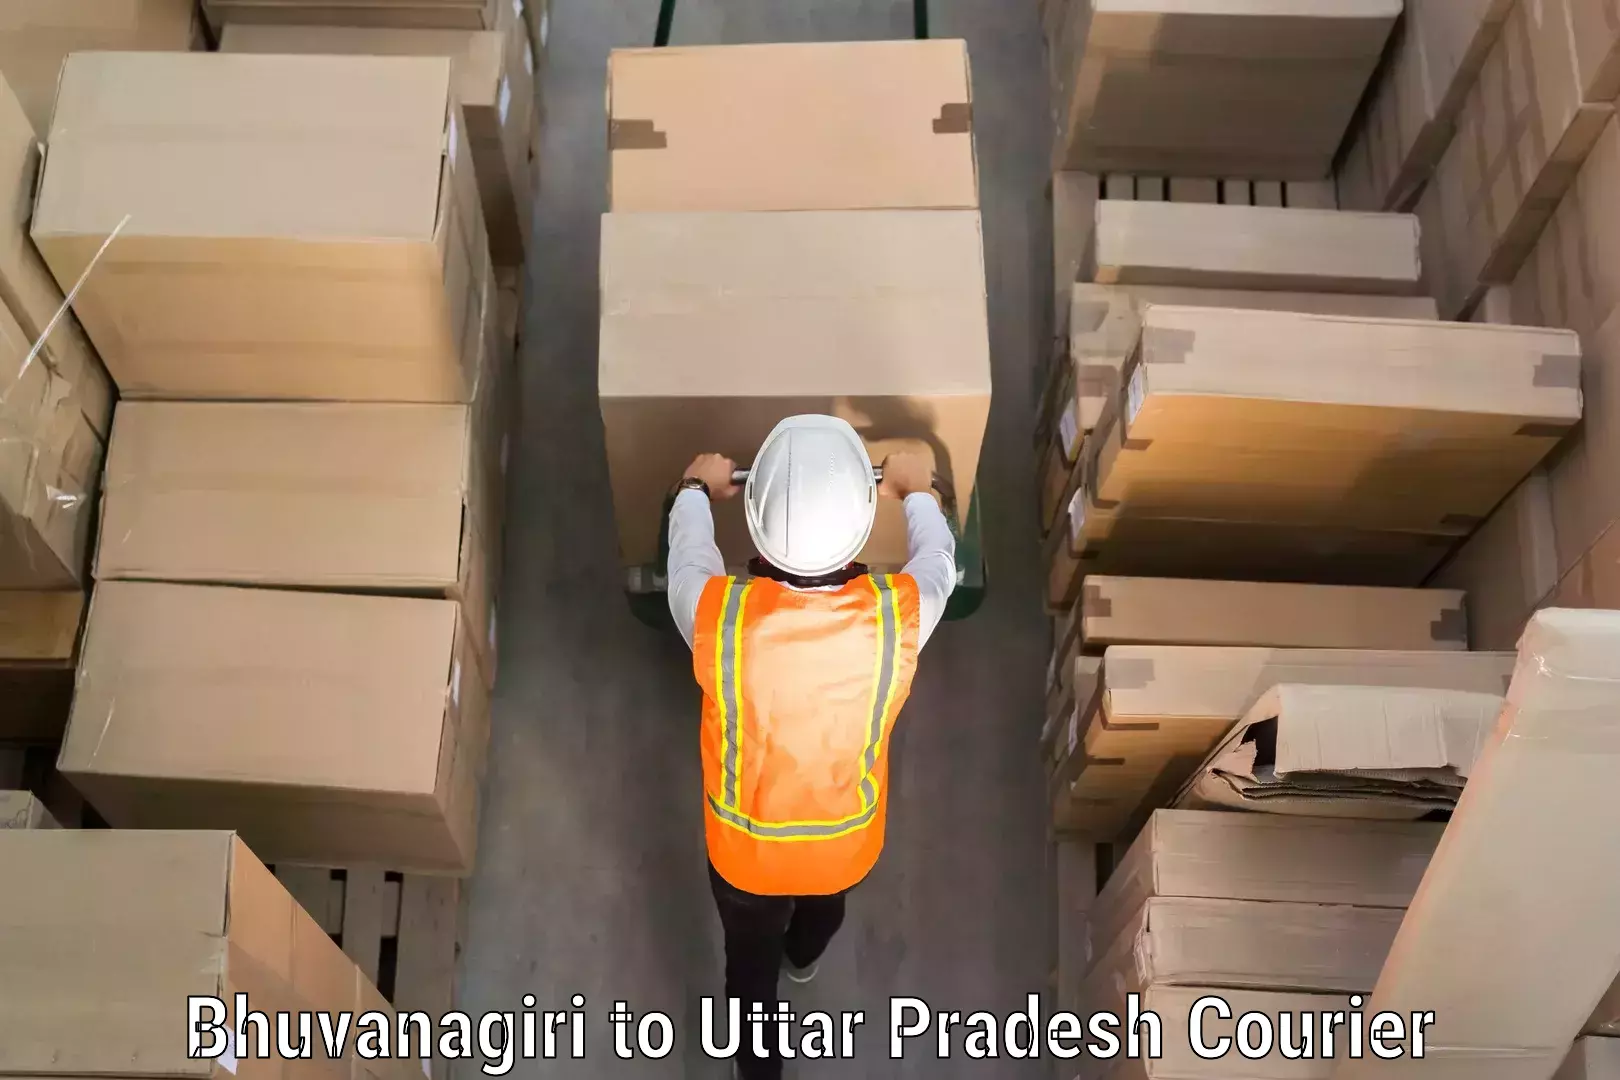 Luggage shipping guide Bhuvanagiri to Ganj Dundwara